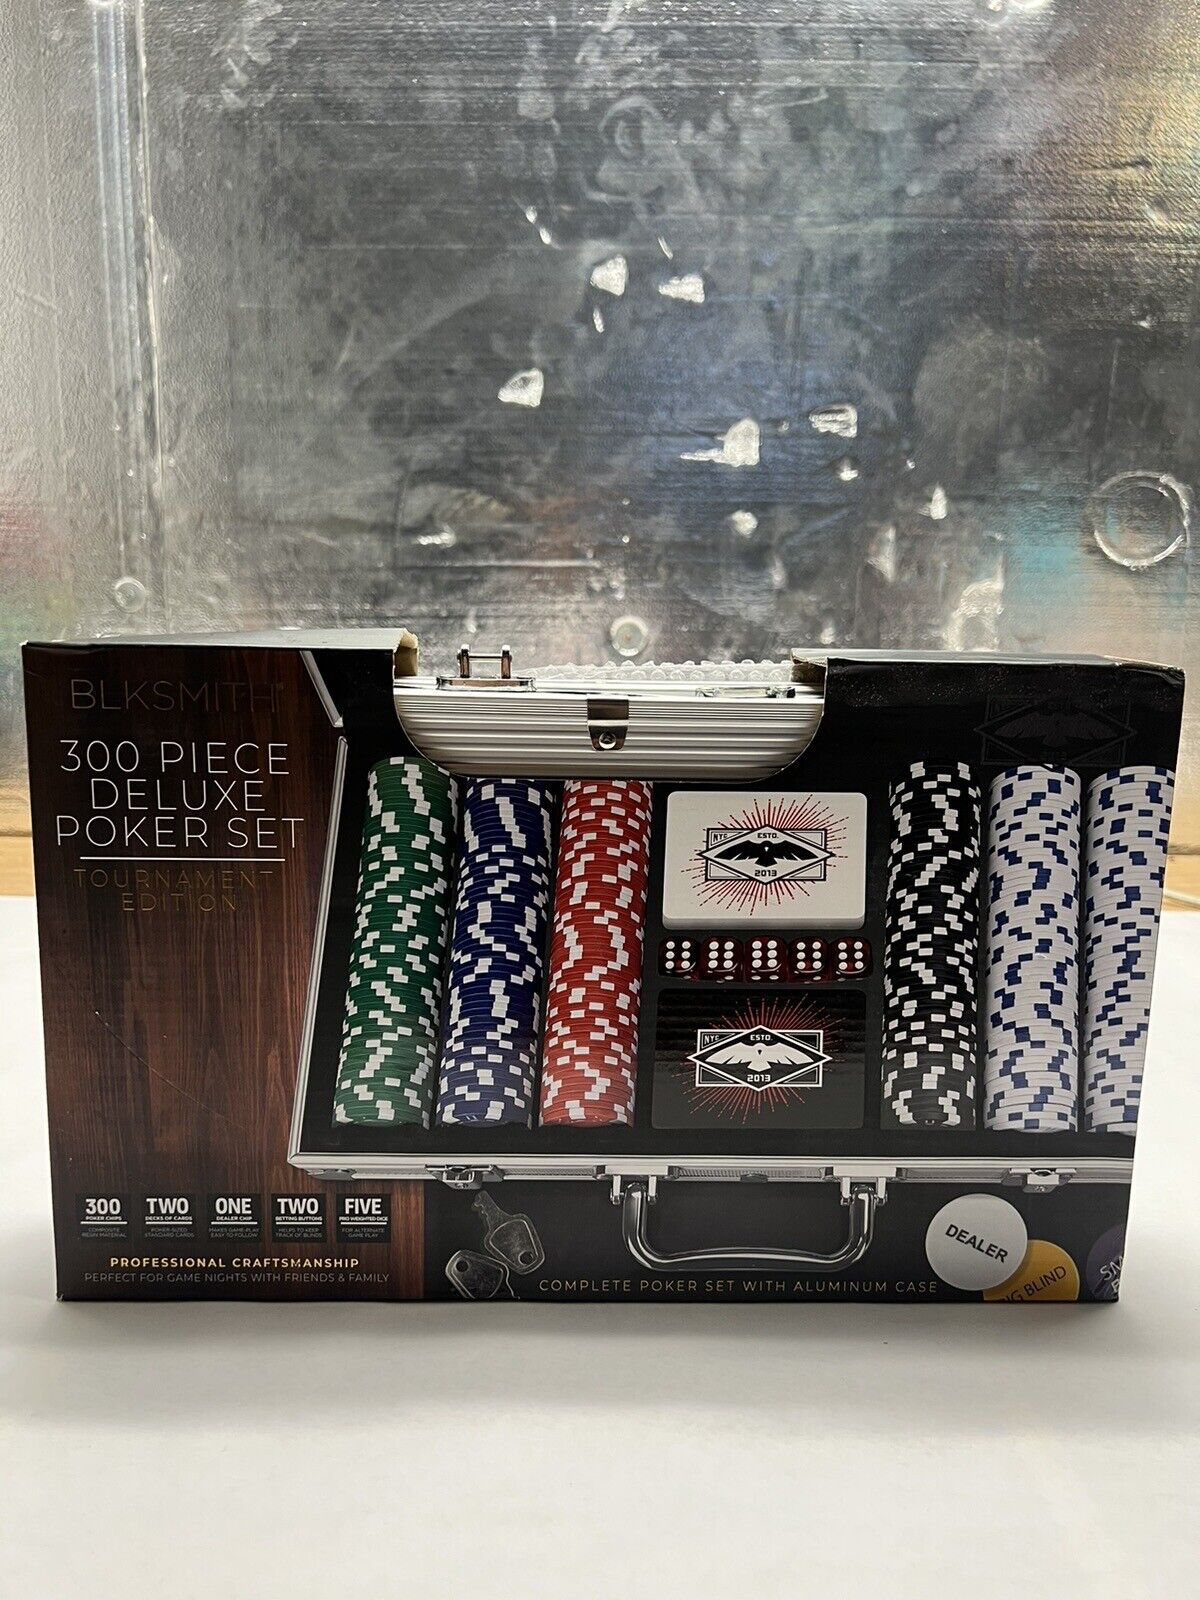 BLKSMITH 300 piece deluxe poker set (BROKEN HANDLE)